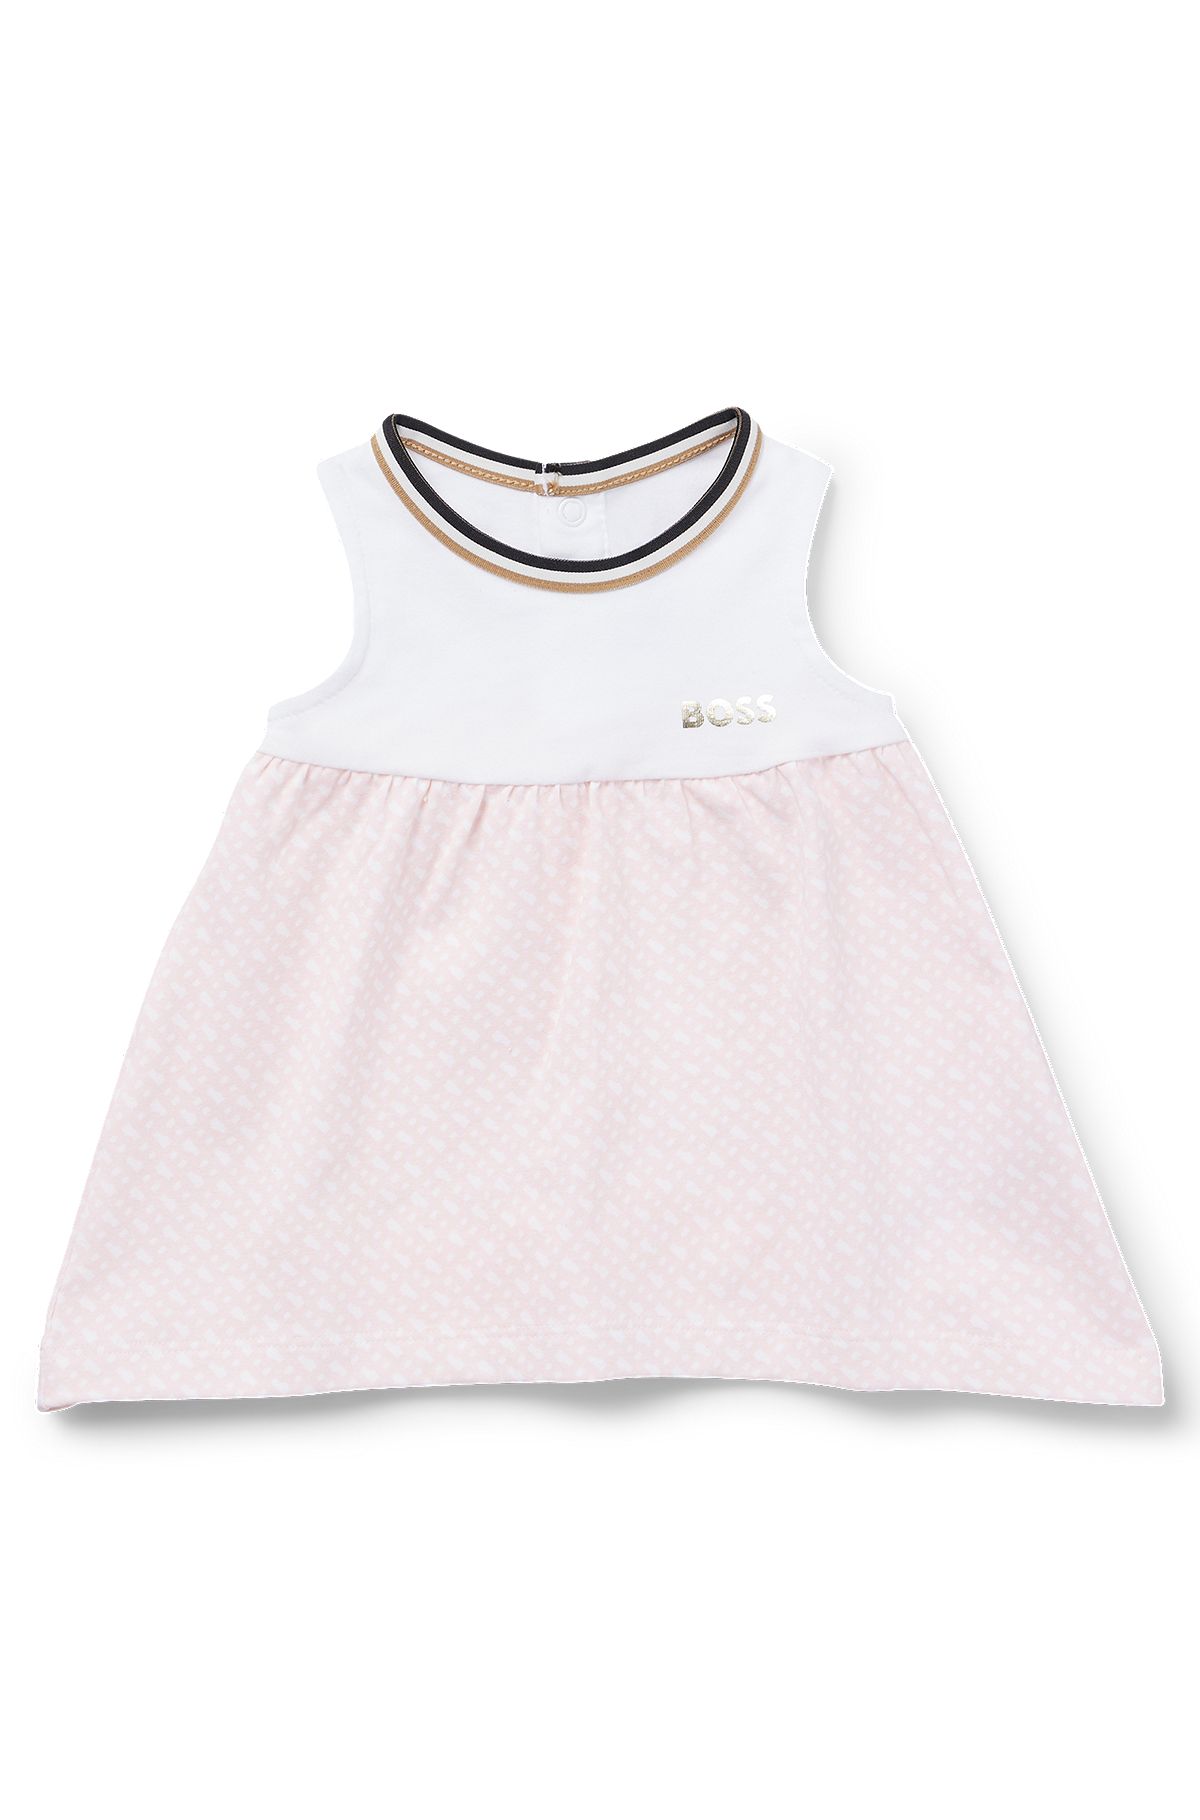 Vestido para bebé en algodón elástico con estampado de monogramas en la falda, Rosa claro